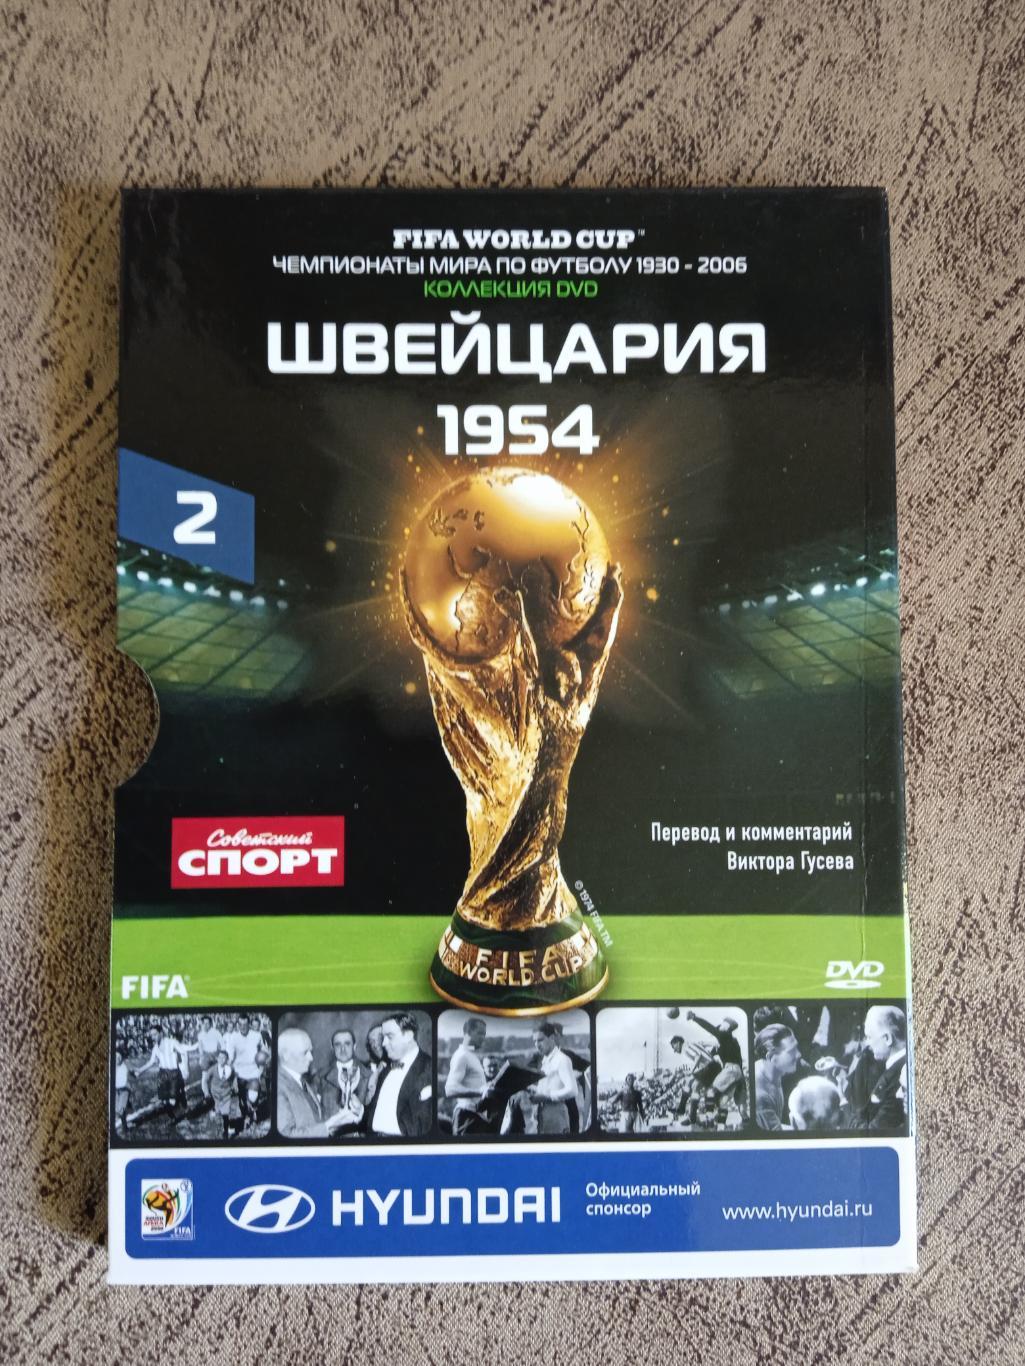 DVD.Футбол.Чемпионаты мира по футболу.Швейцария 1954.№ 2.Советский спорт 2010 г.